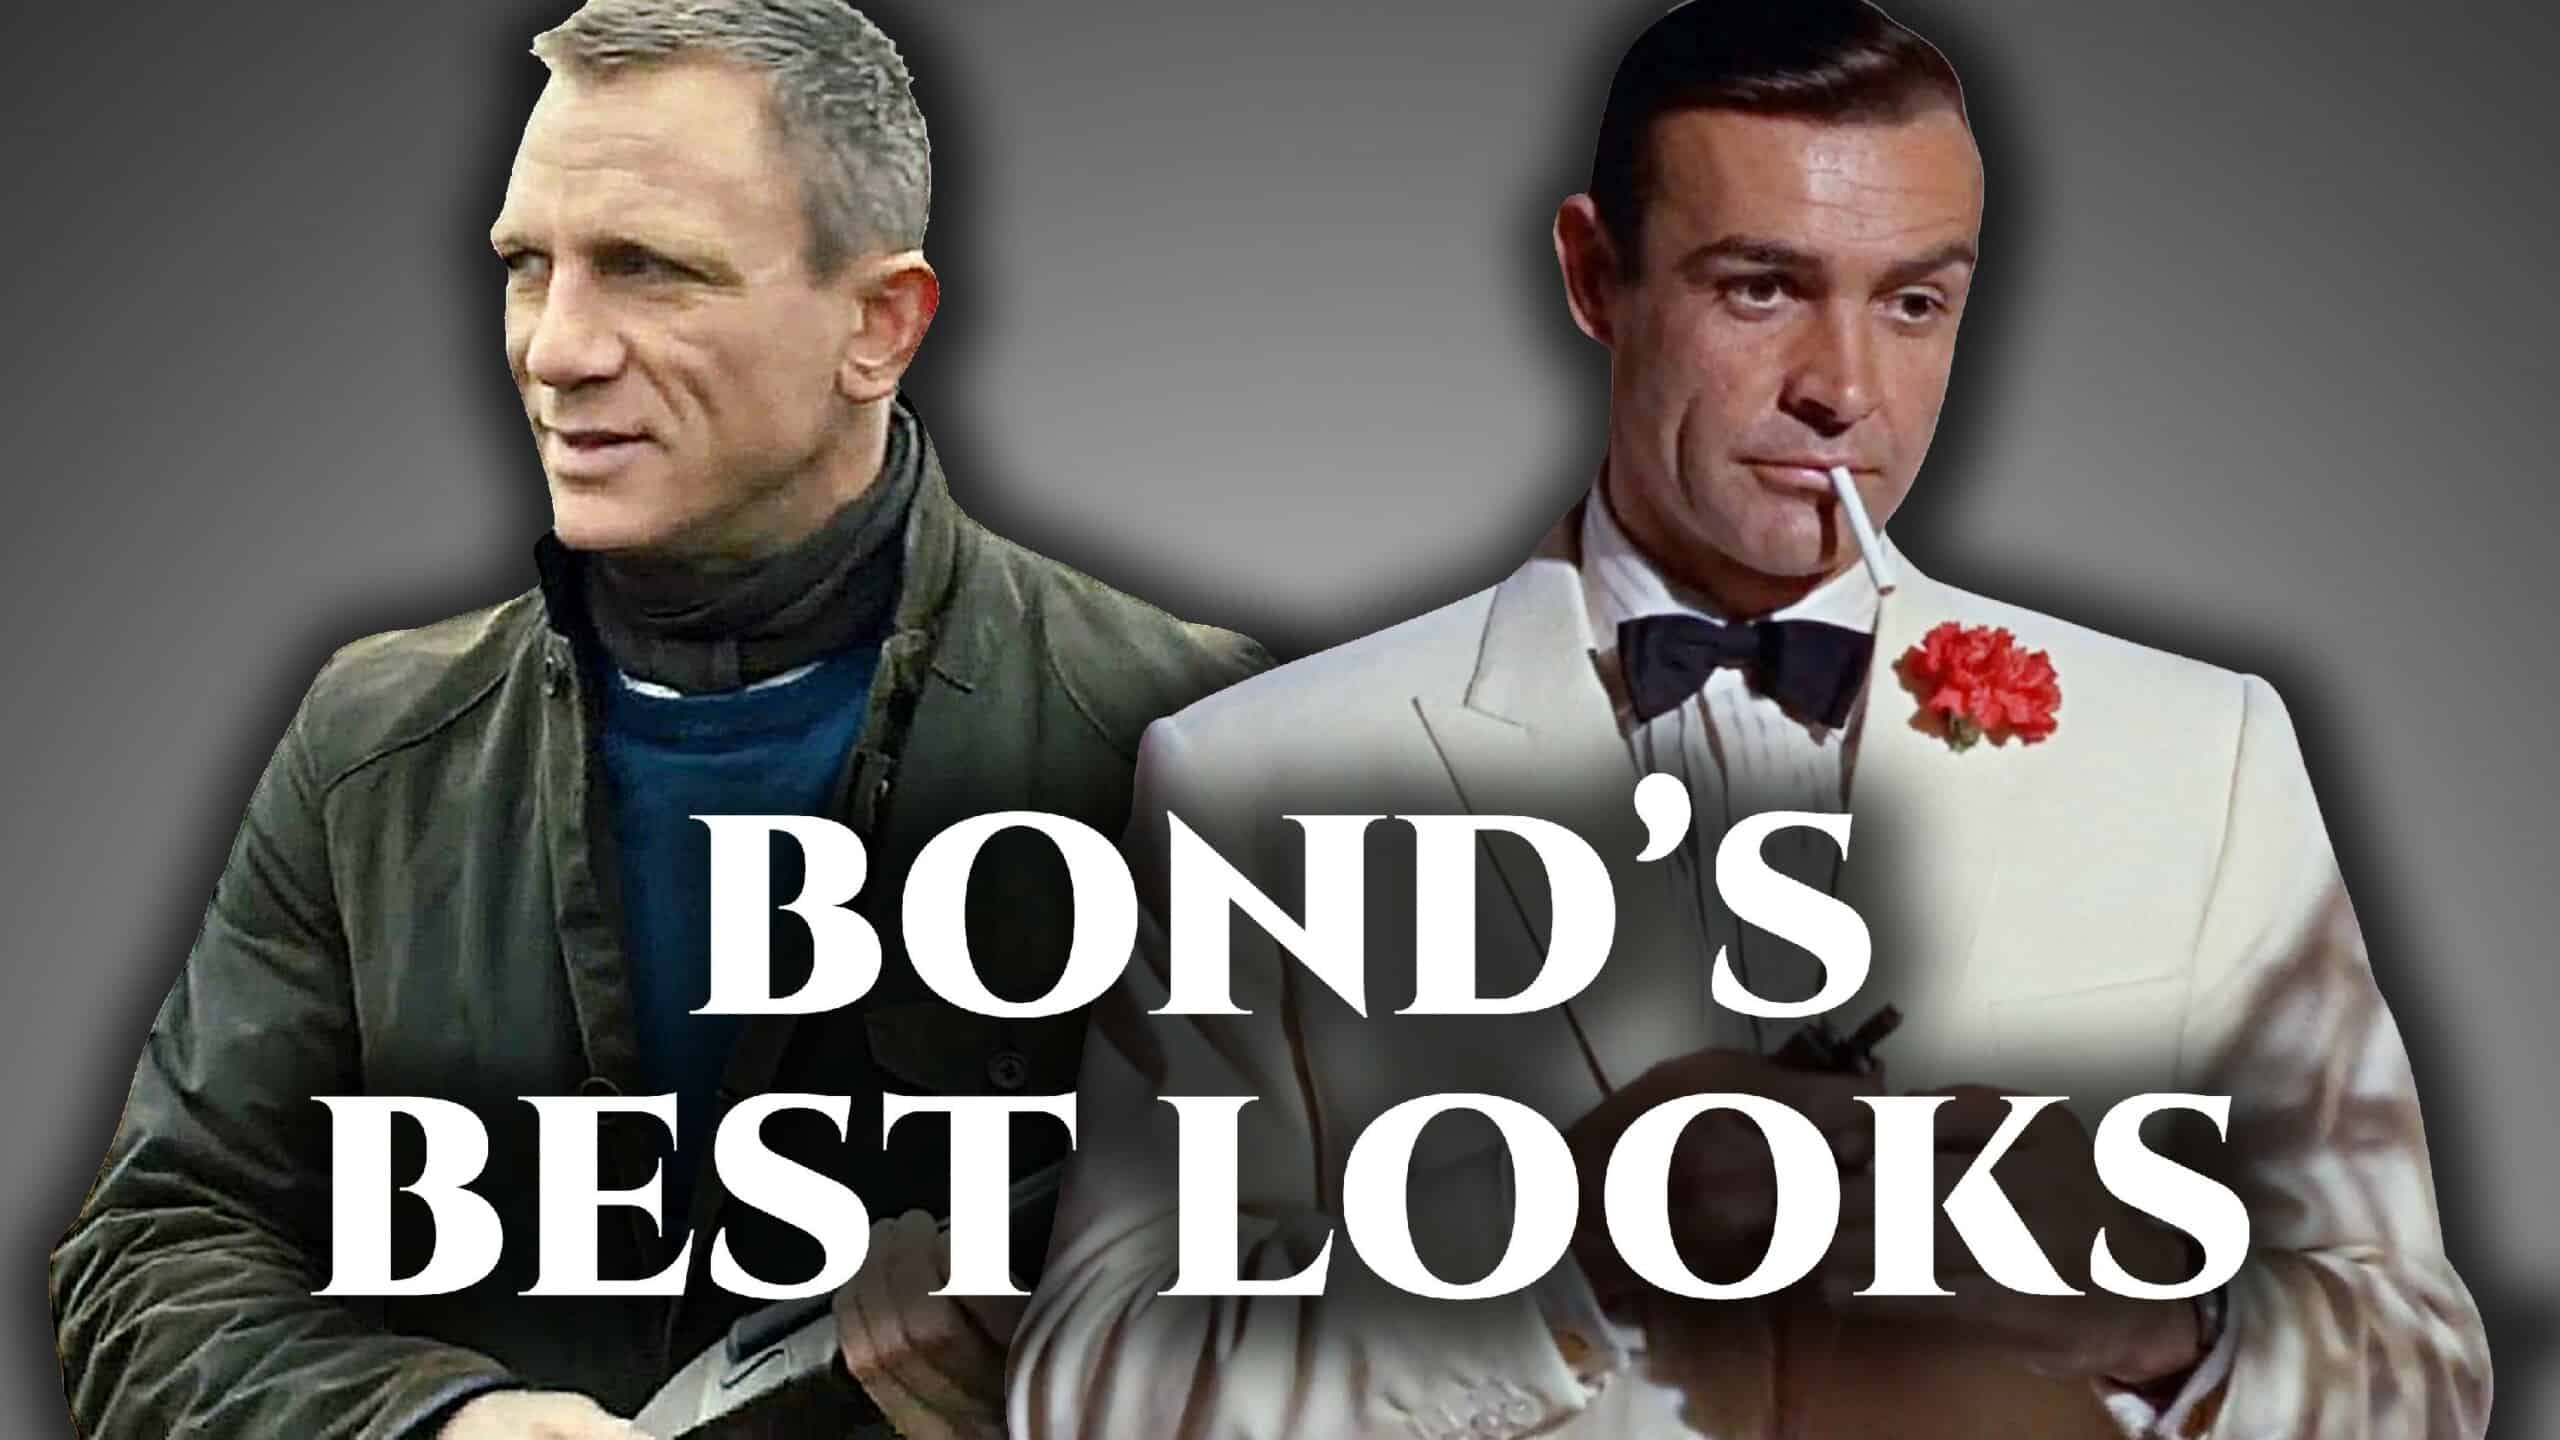 My favourite Bond film: Dr No, James Bond